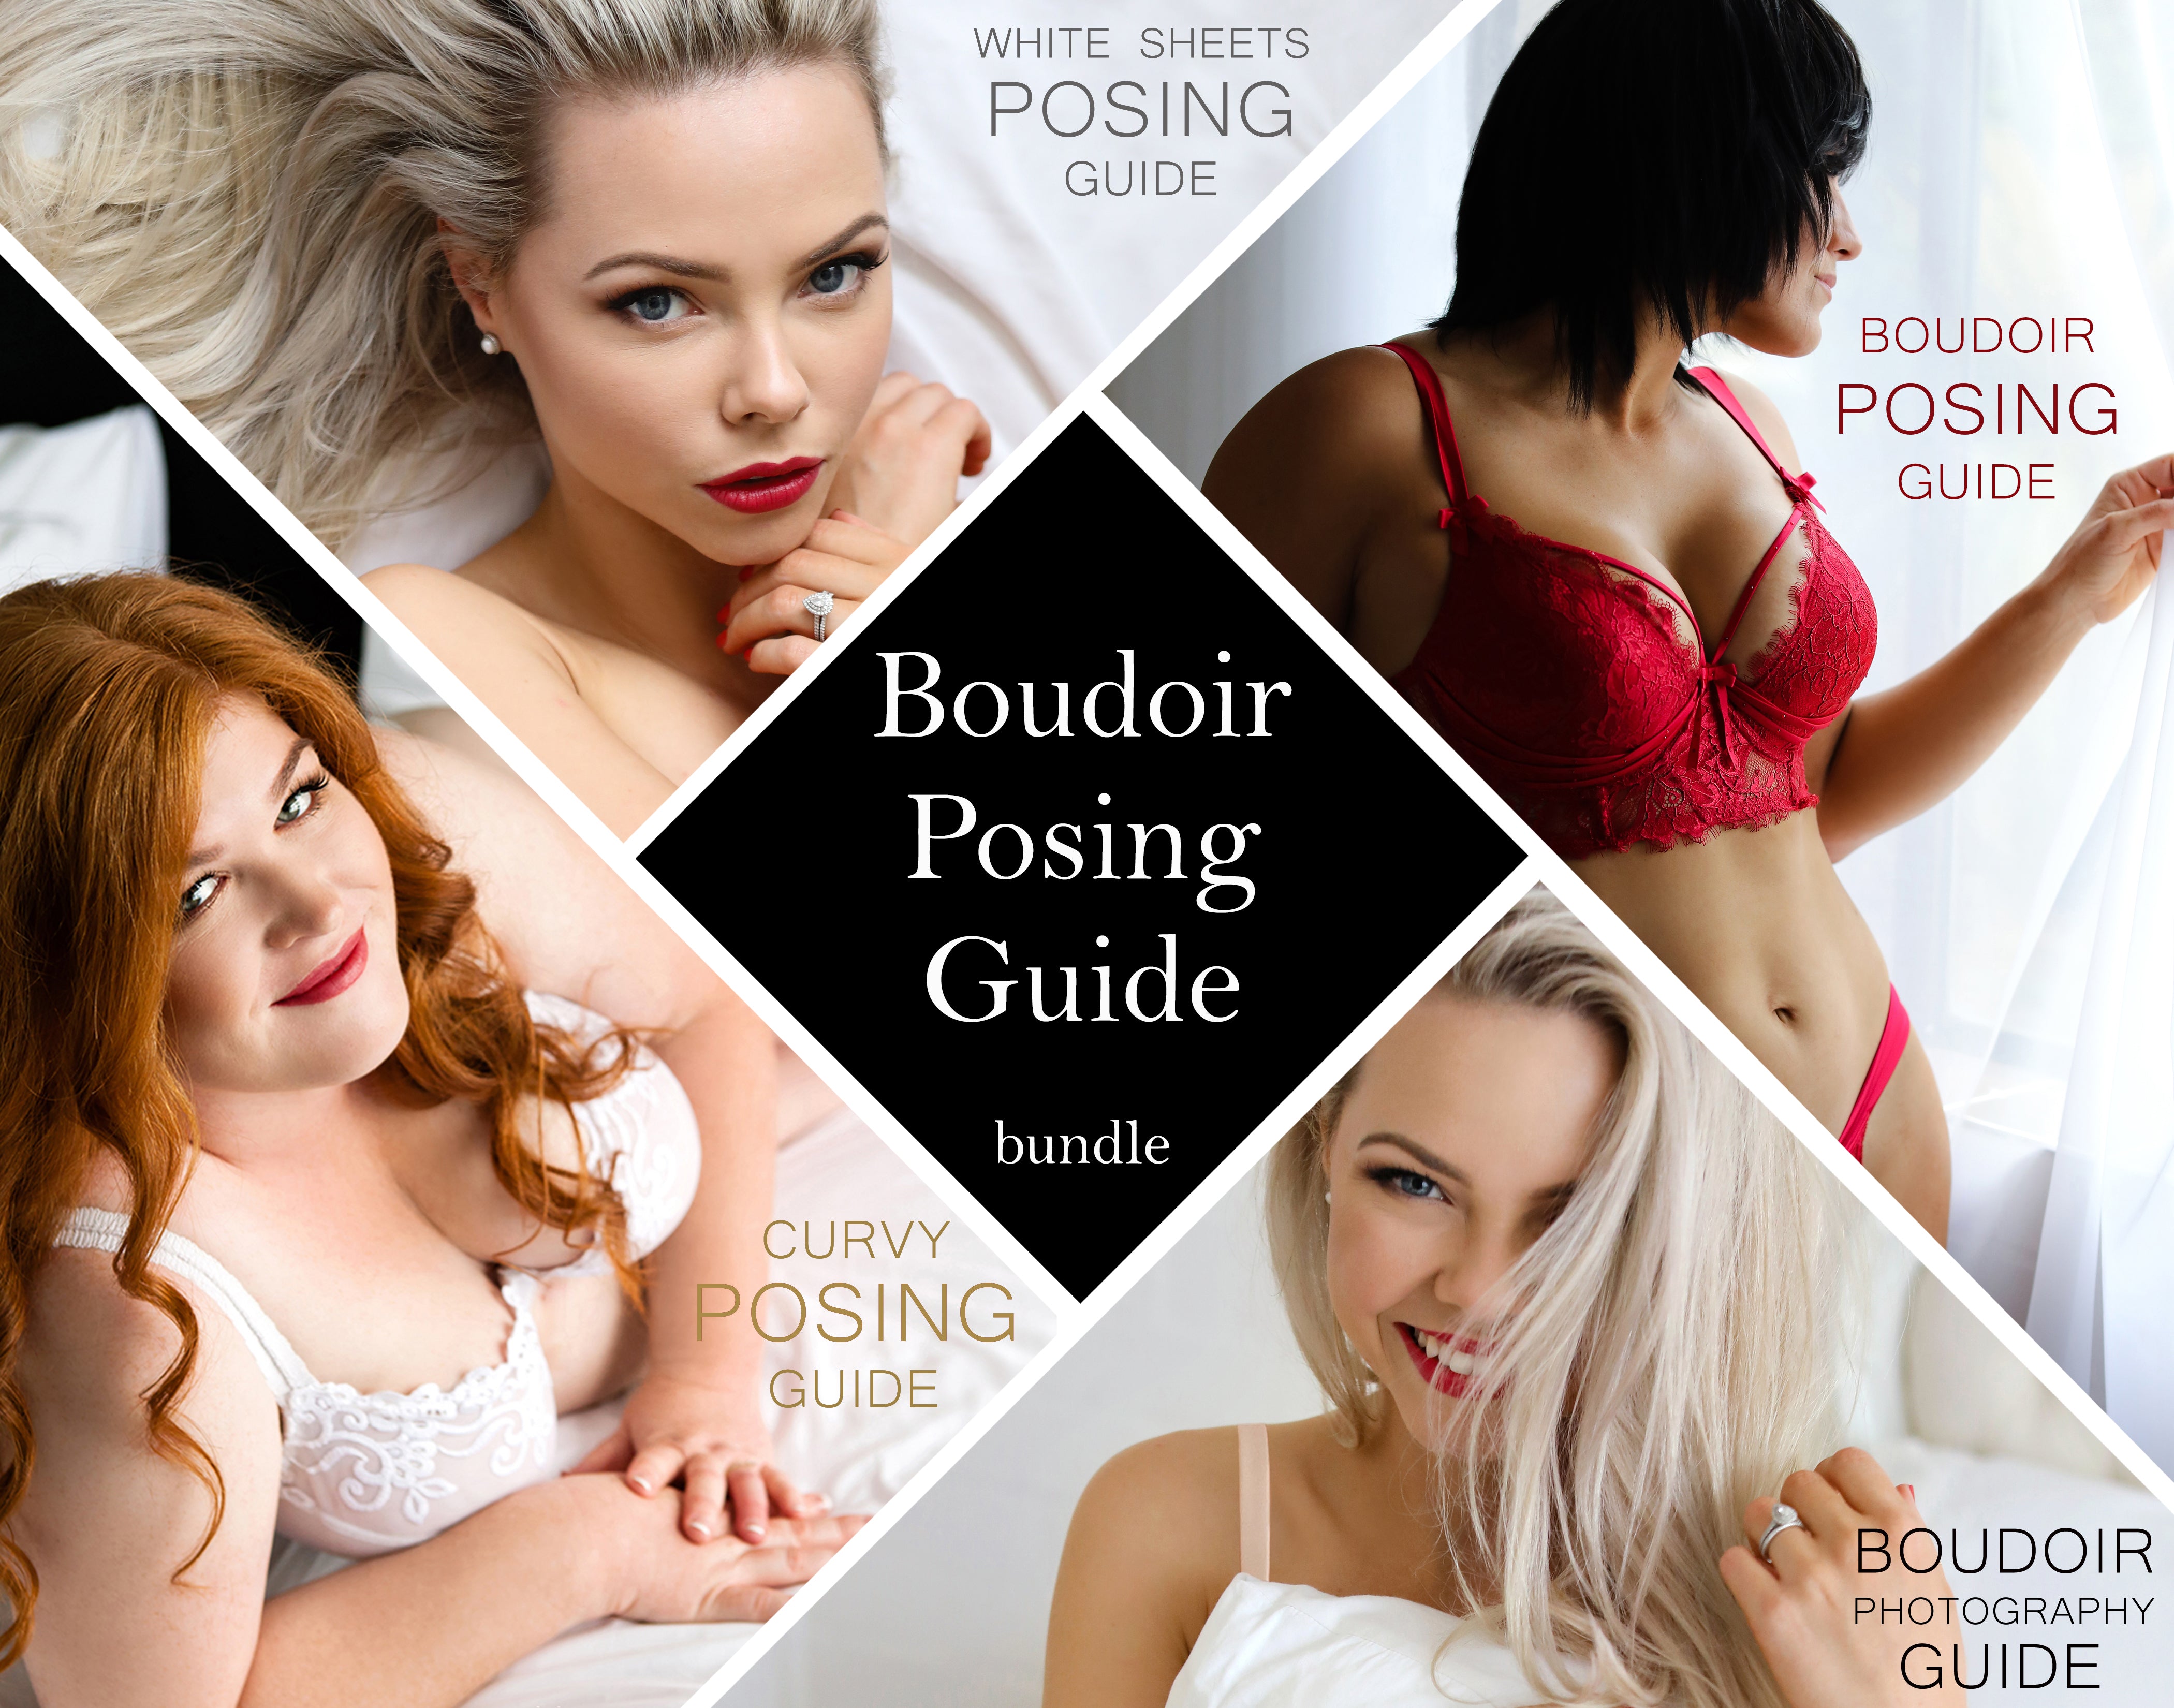 Top Tips for Boudoir Posing from Jen Rozenbaum | Rangefinder